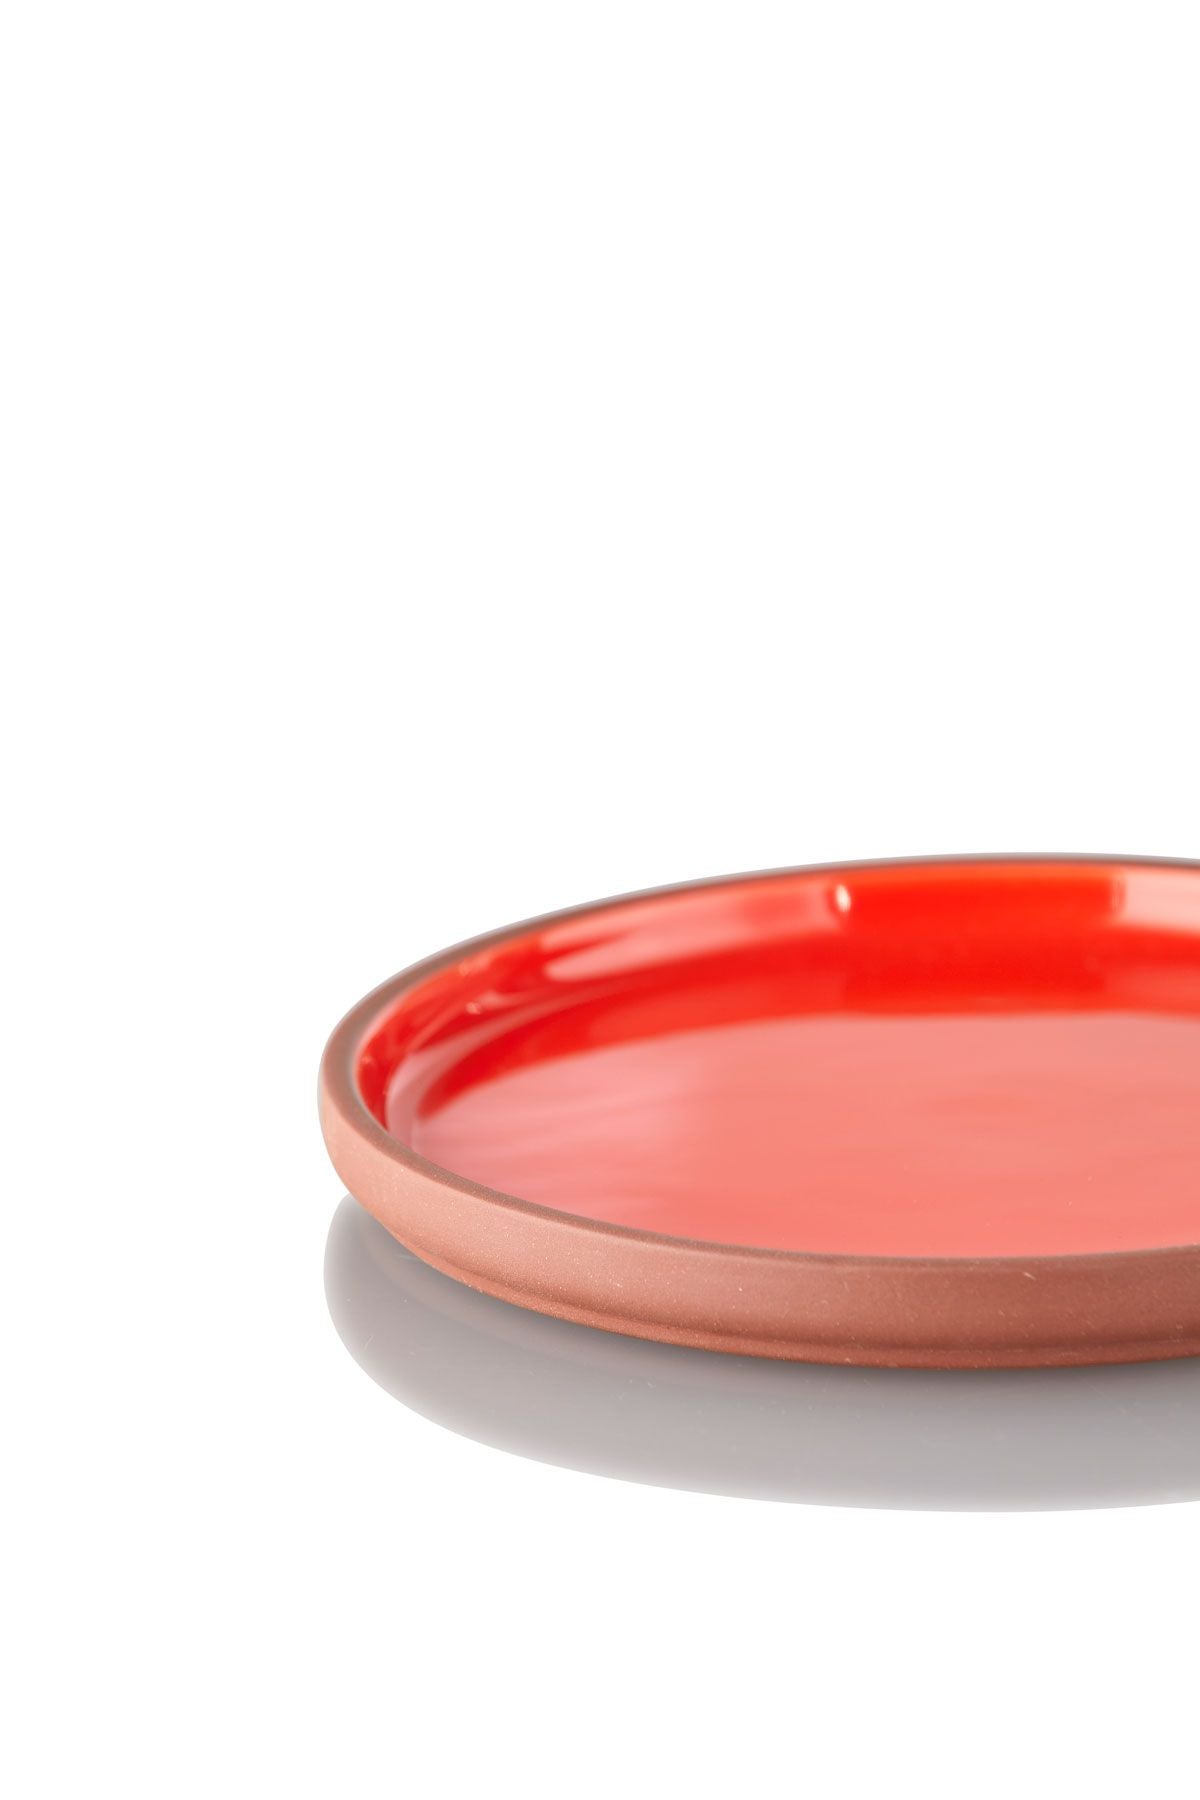 Estudio sobre Clayware Conjunto de 2 placas Medium, Terracotta/Red